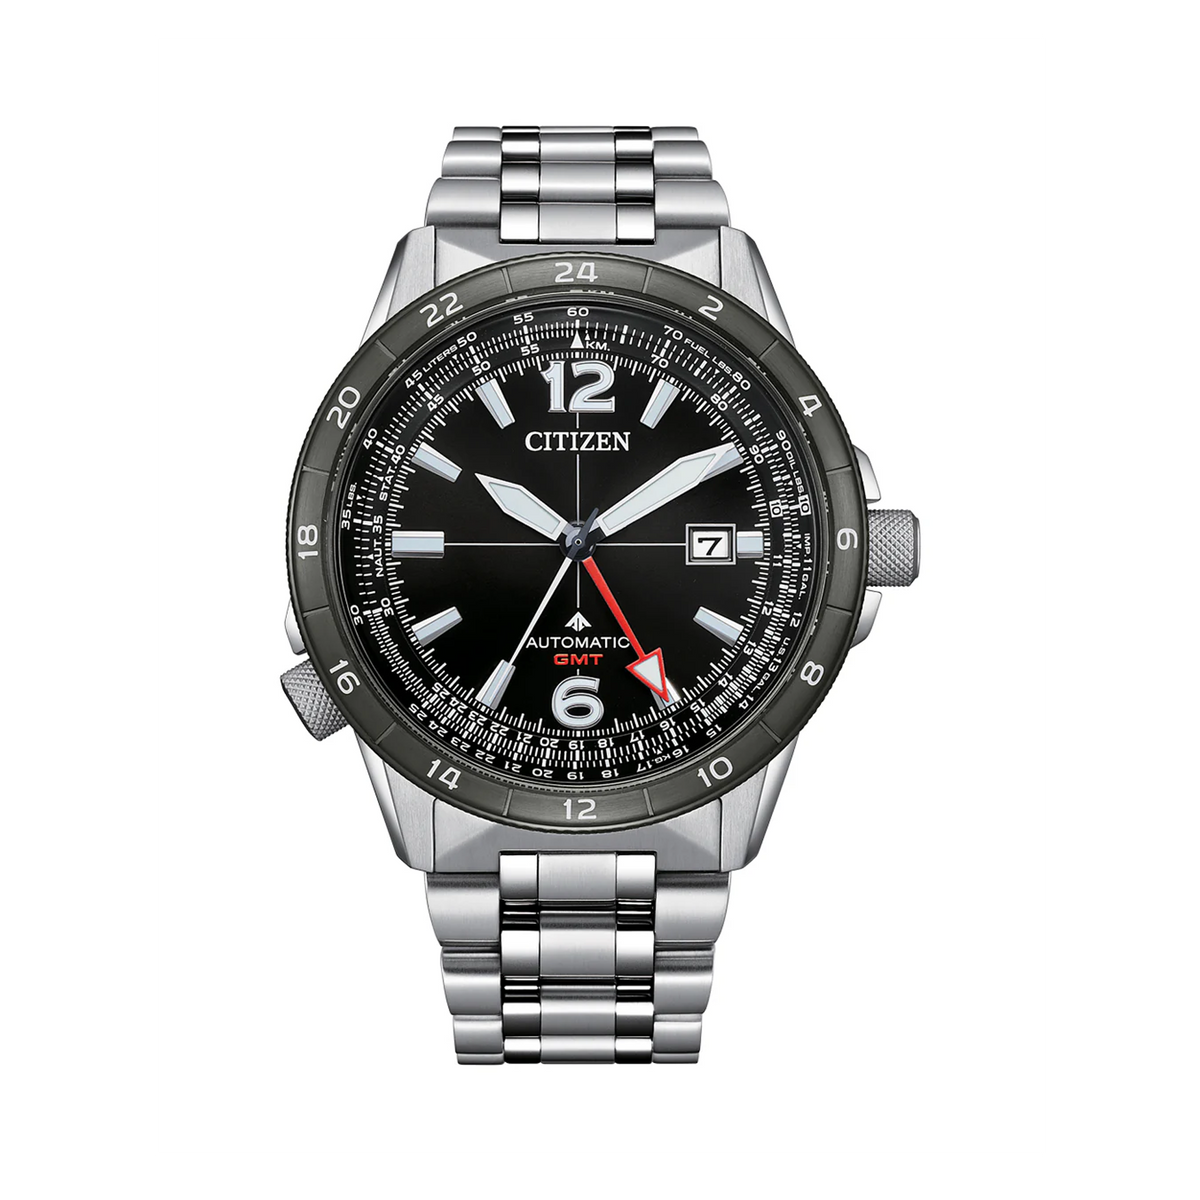 Citizen Men's Black Automatic GMT Watch NB6046-59E